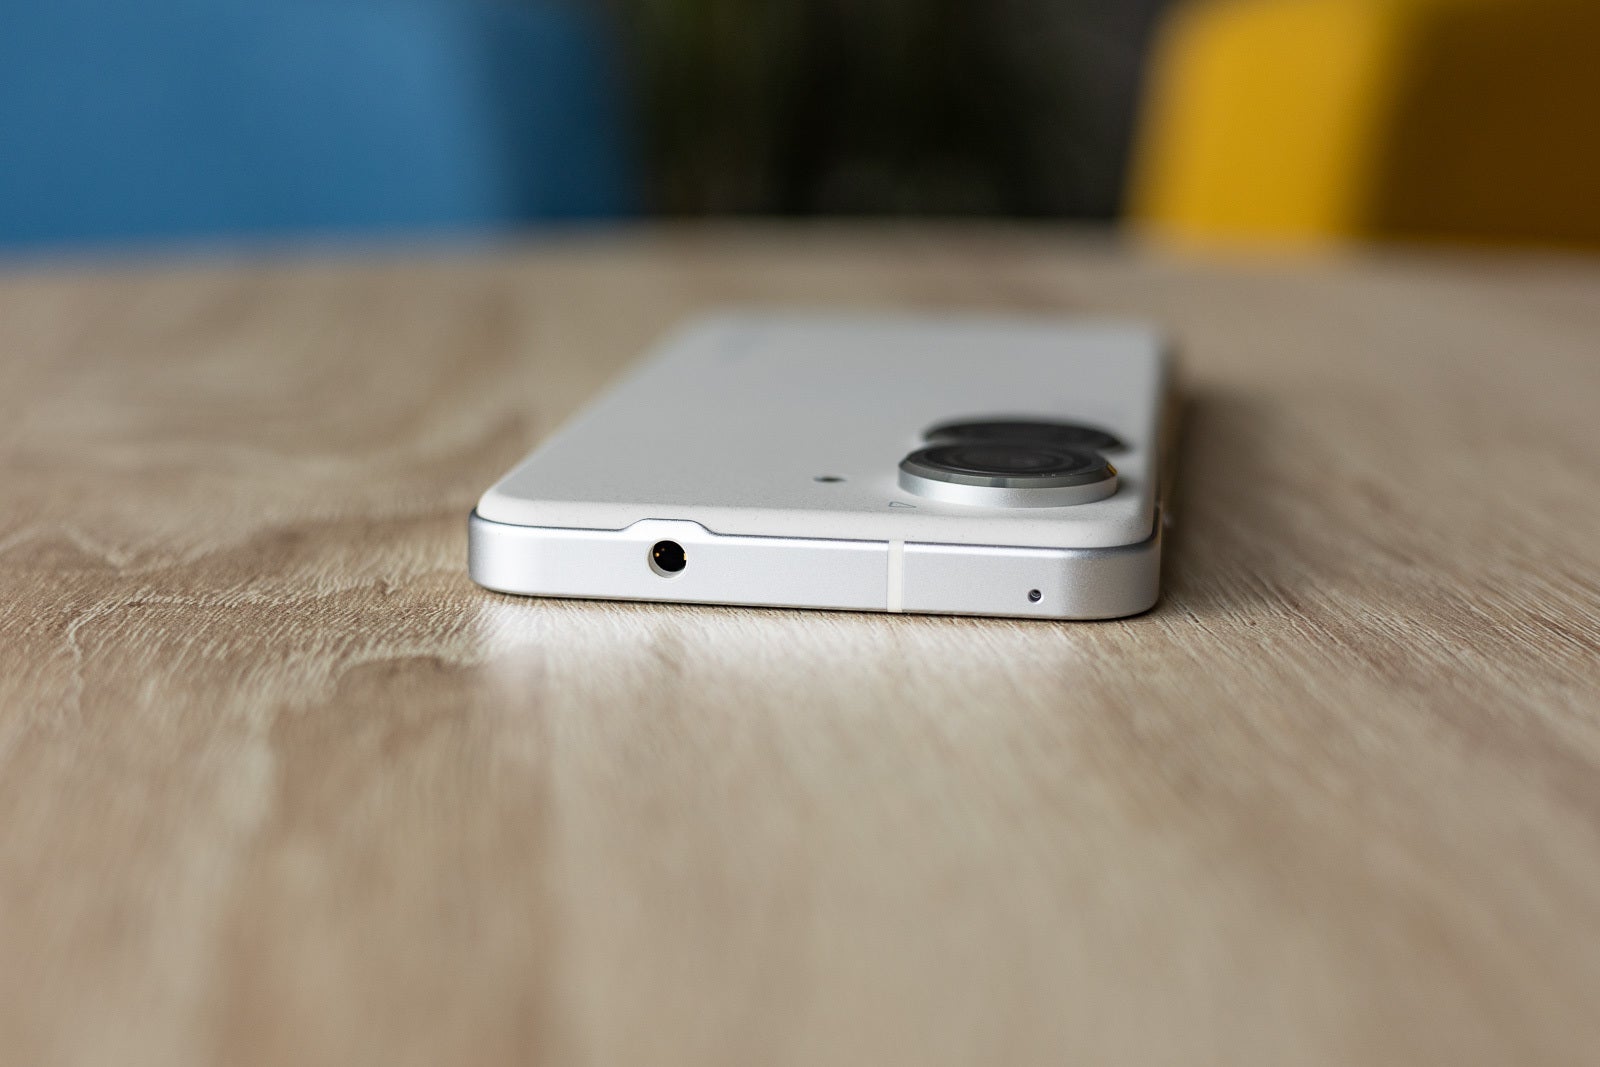 (تصویر اعتبار - PhoneArena) Zenfone 9 ثابت می کند که می توانید عمر باتری عالی و جک هدفون داشته باشید - این تلفن ساده و بی تکلف جدید ریاکاری پرچمداران مدرن آیفون و گلکسی را برملا می کند.